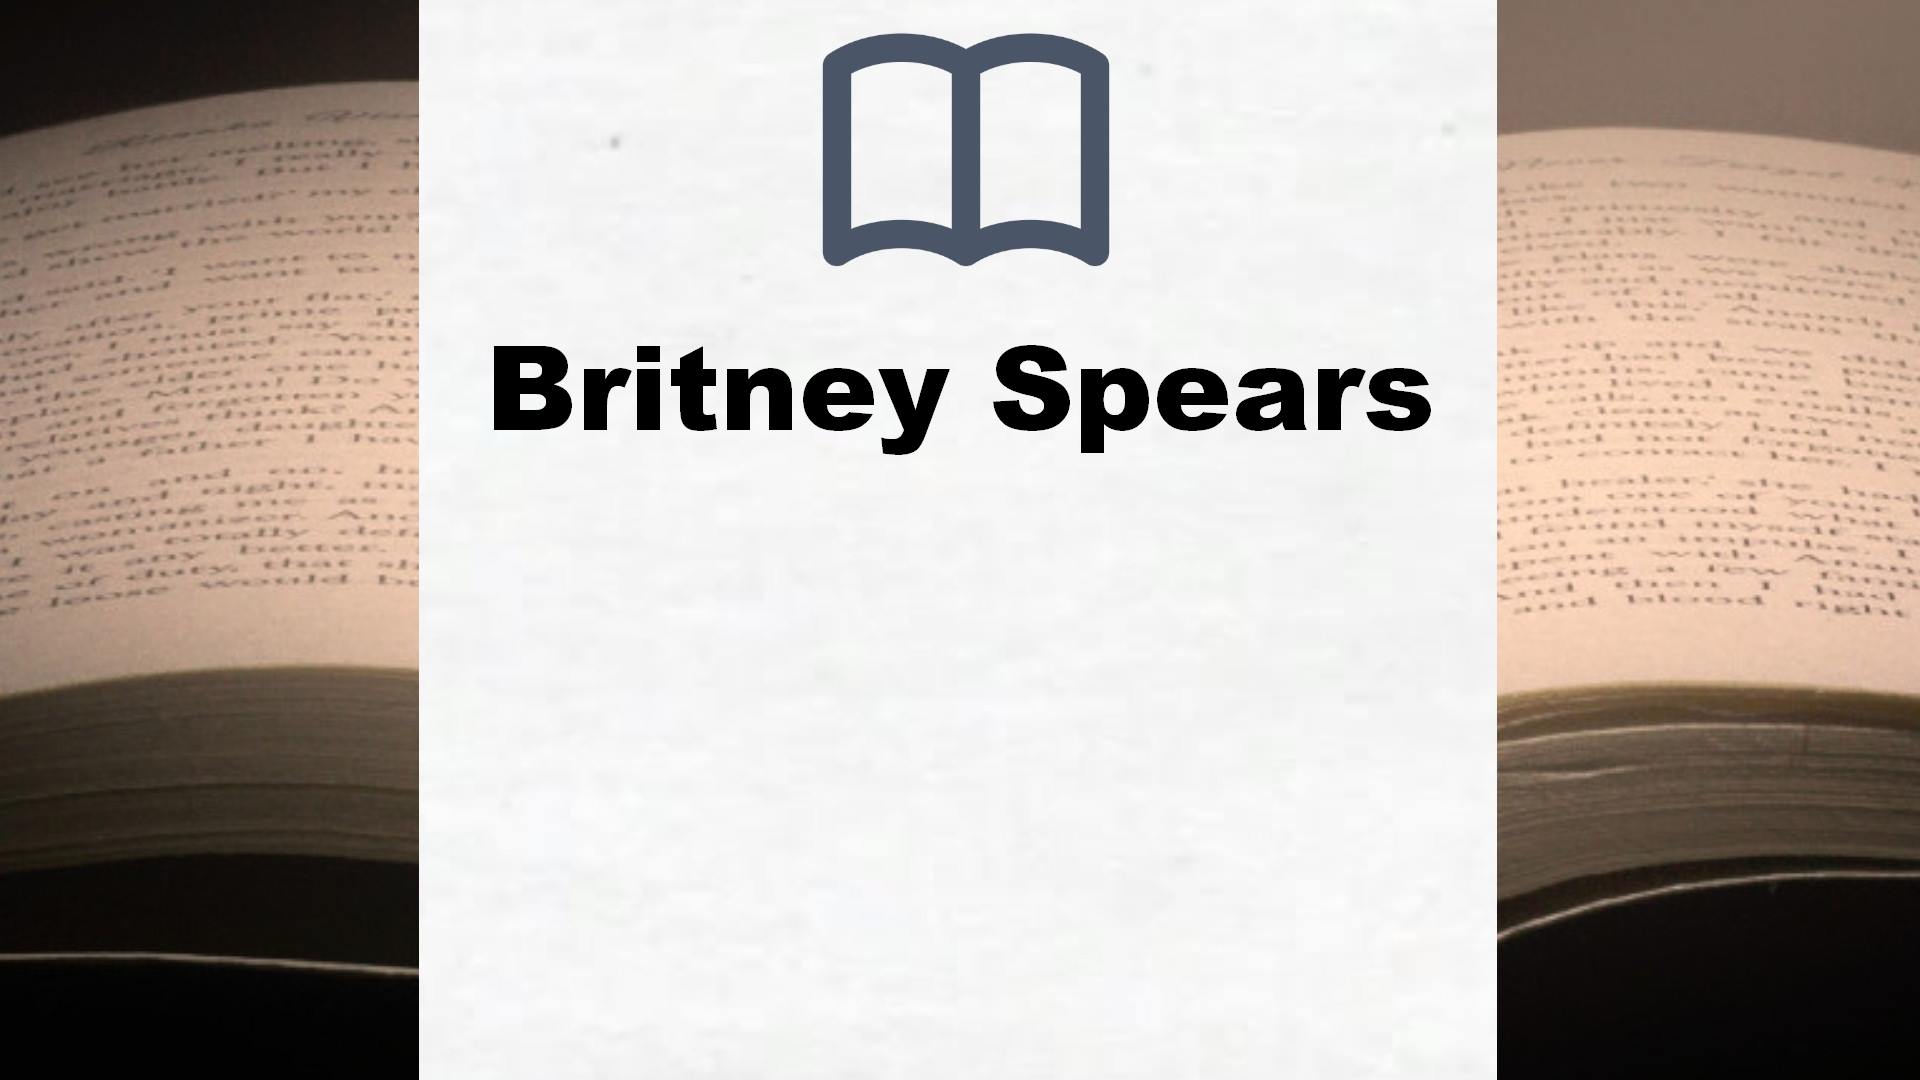 Bücher über Britney Spears